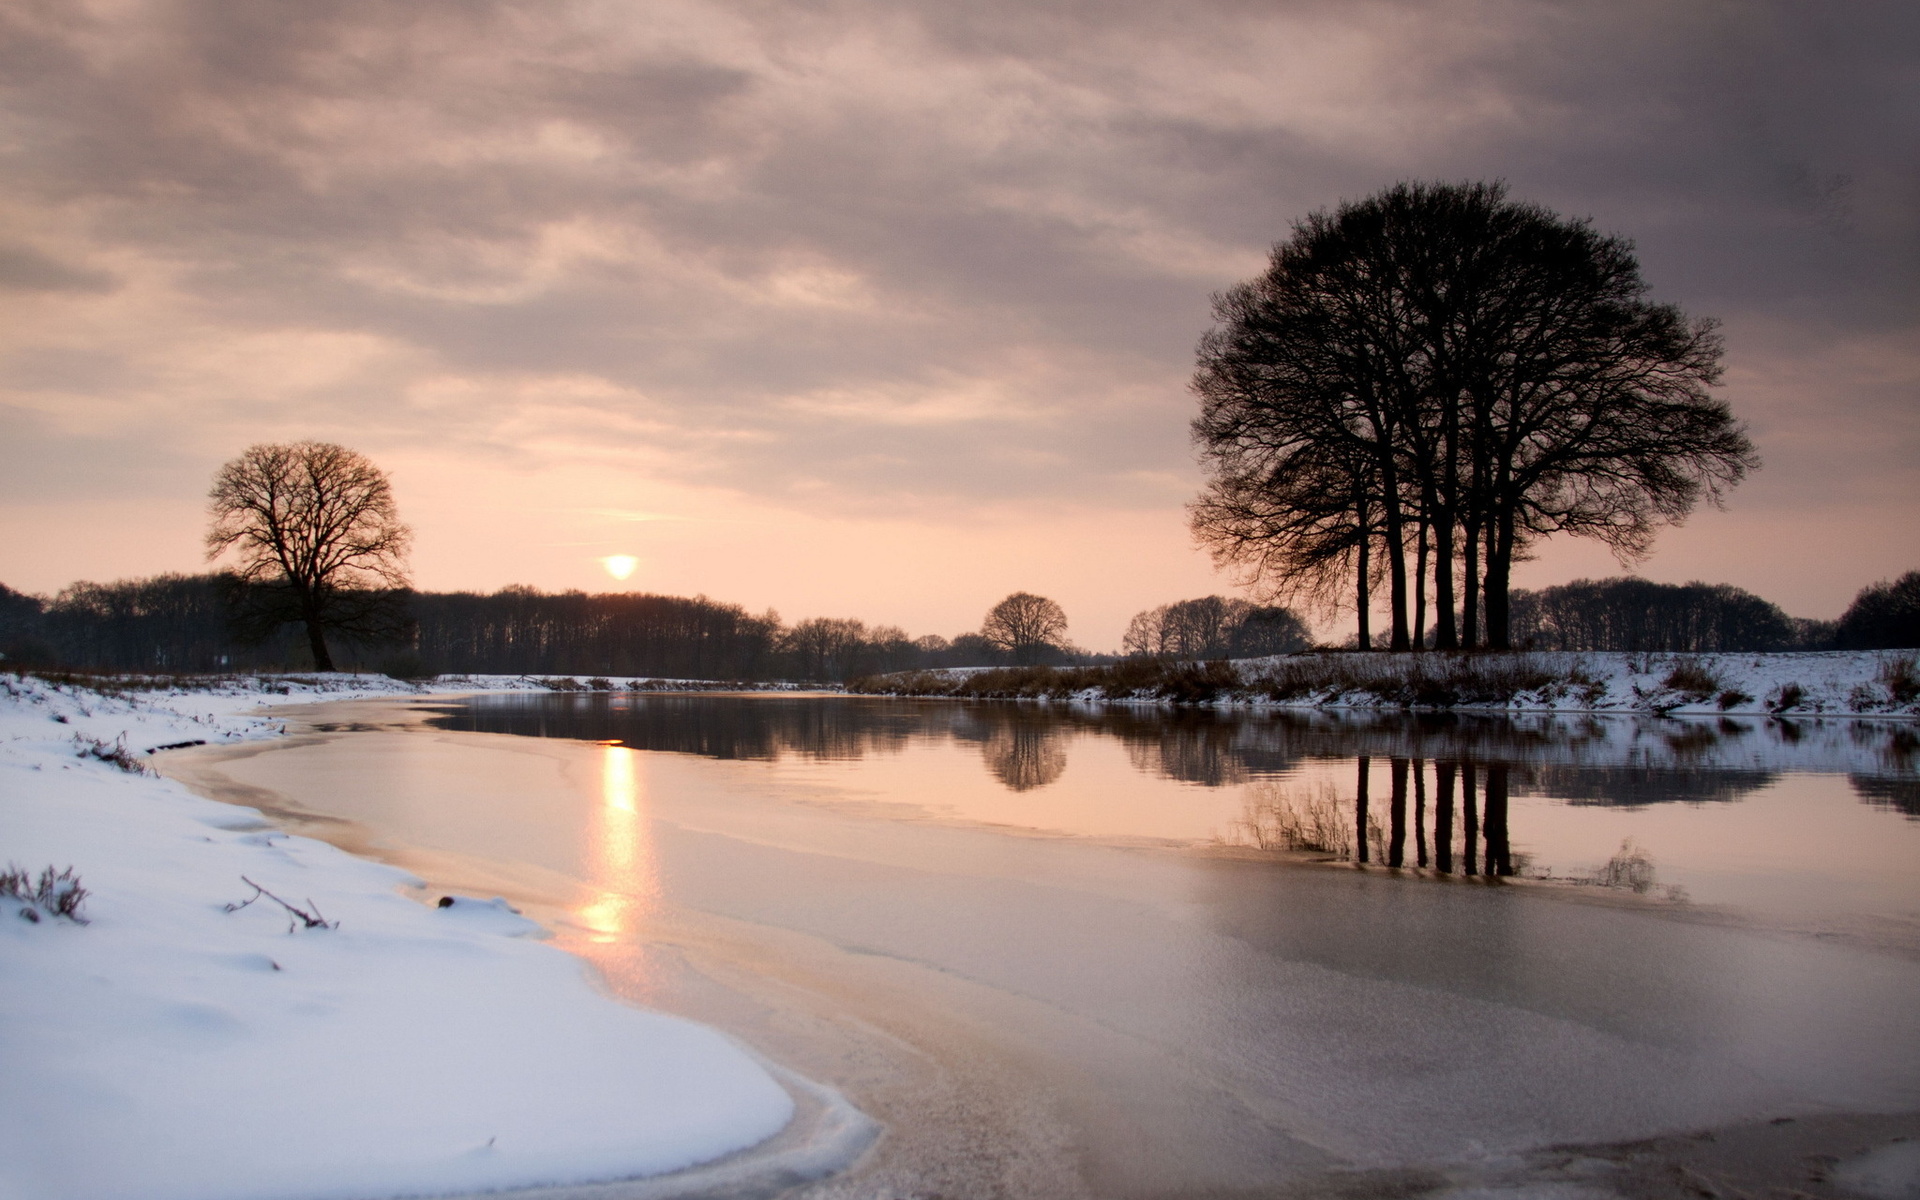 عکس استوک غروب آفتاب طبیعت برفی در فصل زیبای زمستان